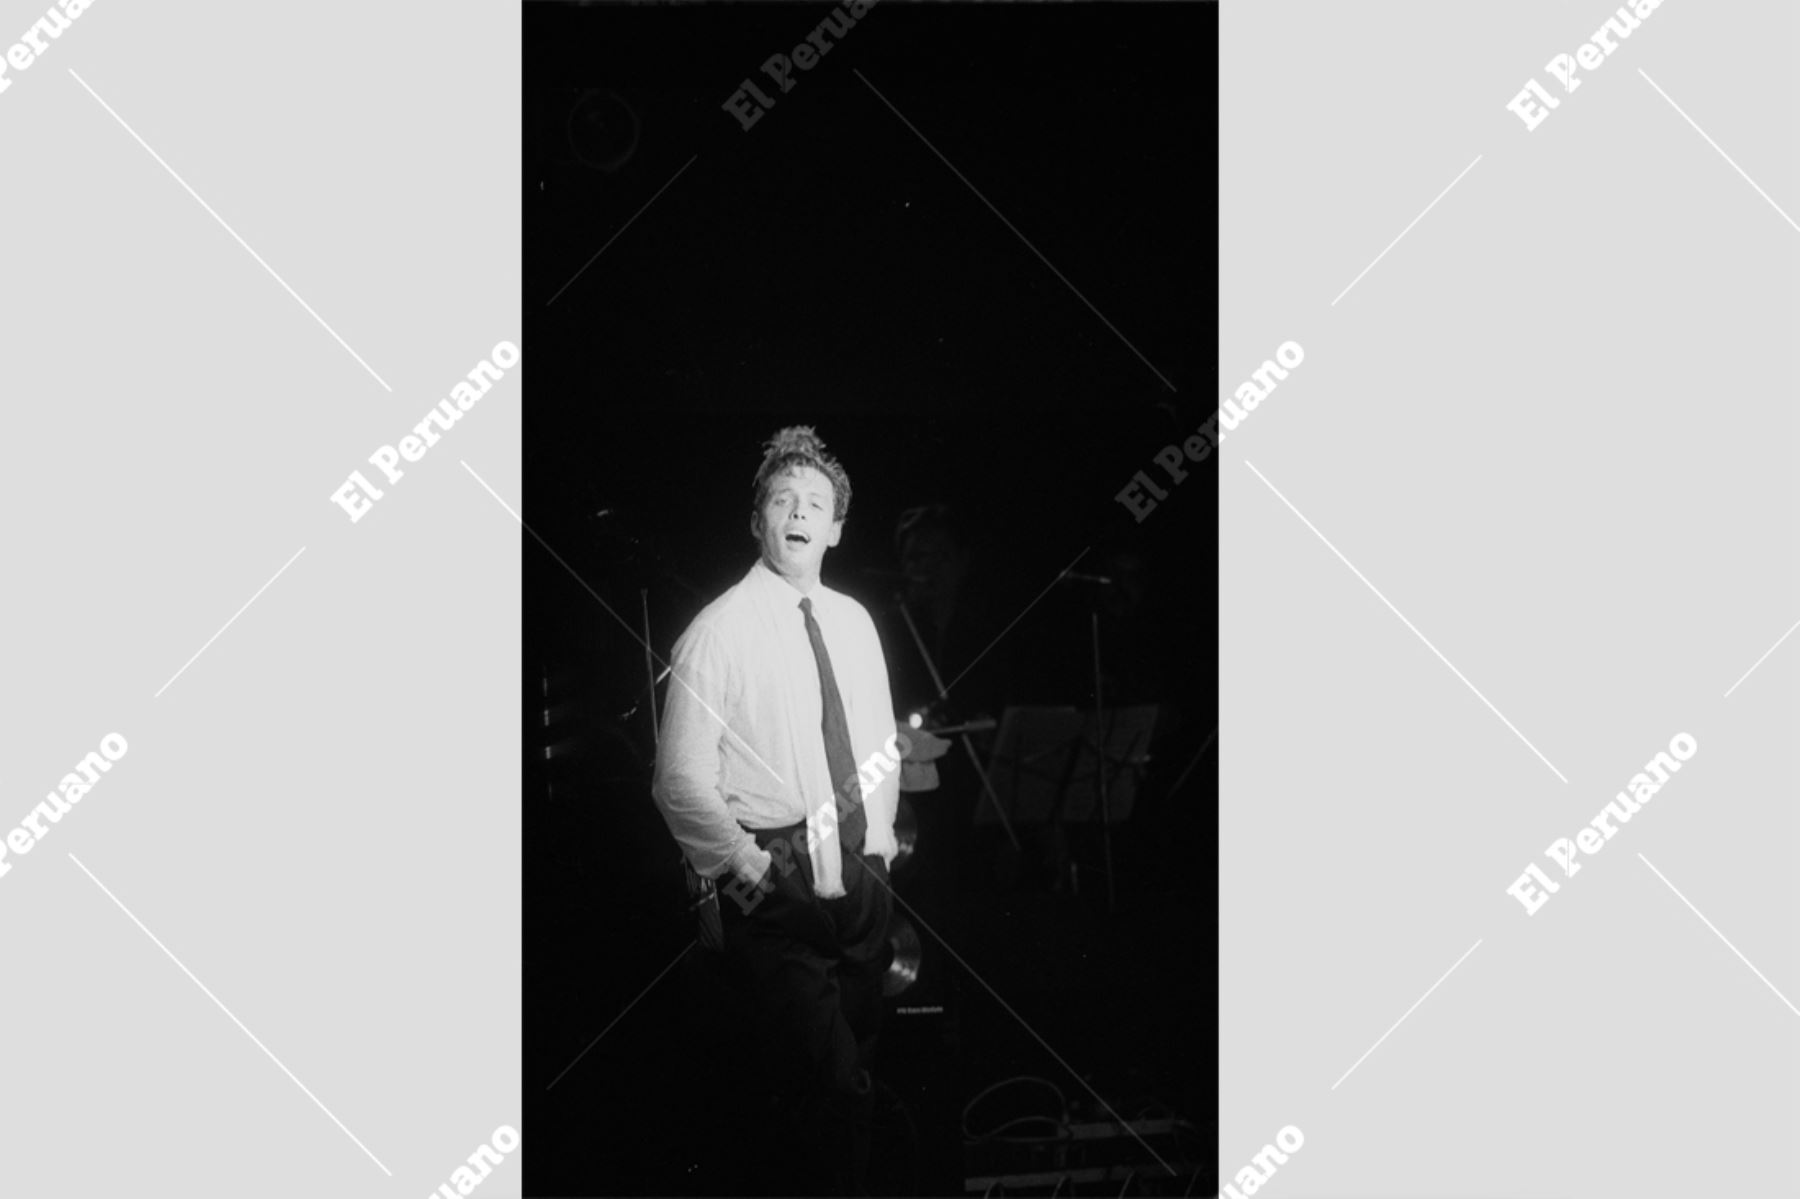 Lima - 22 marzo 1990 / Concierto de Luis Miguel en el coliseo del colegio San Agustín.